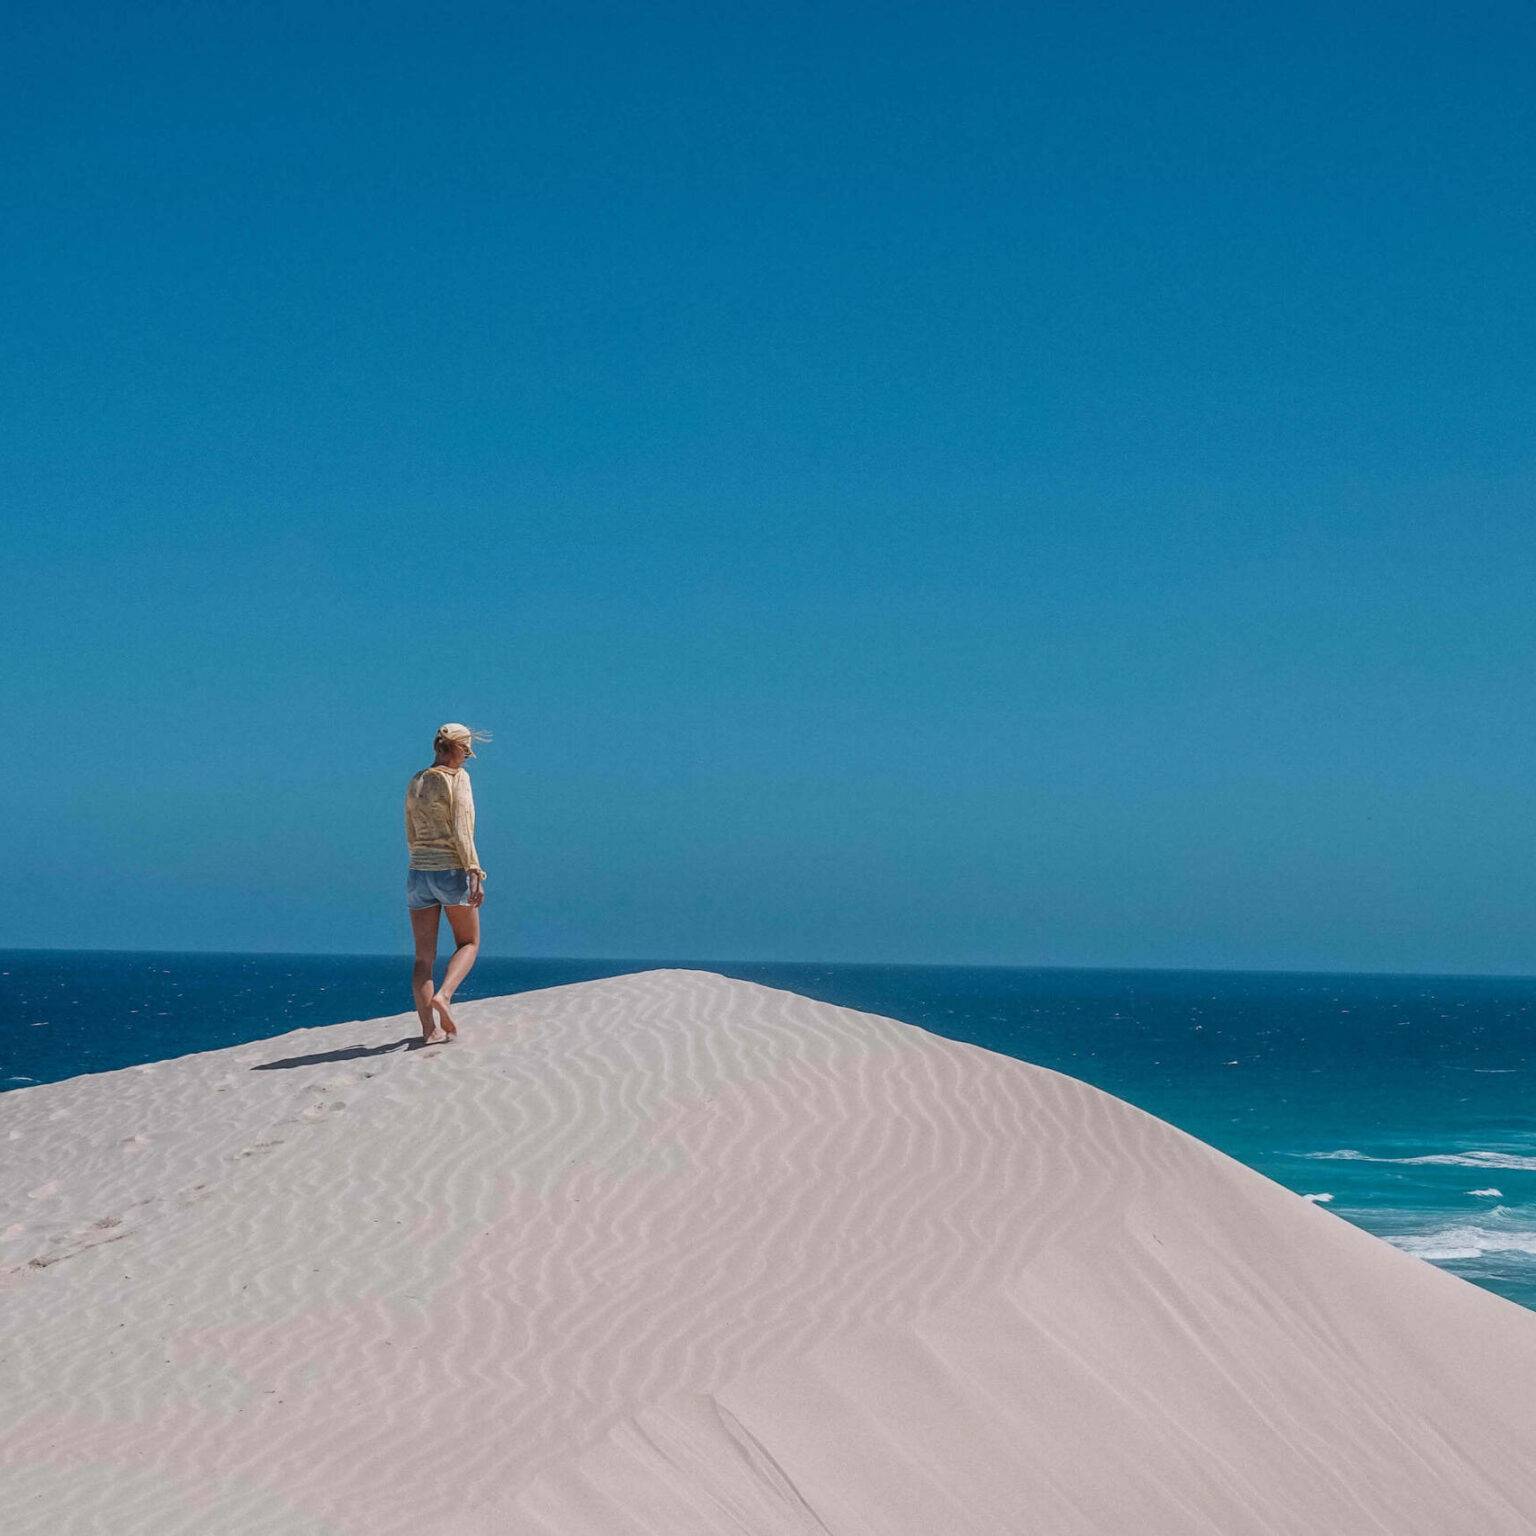 Bloggerin Nina steht auf einer Düne in weißem Sand mit türkisblauem Meer und einem blauen Himmel im Hintergrund.